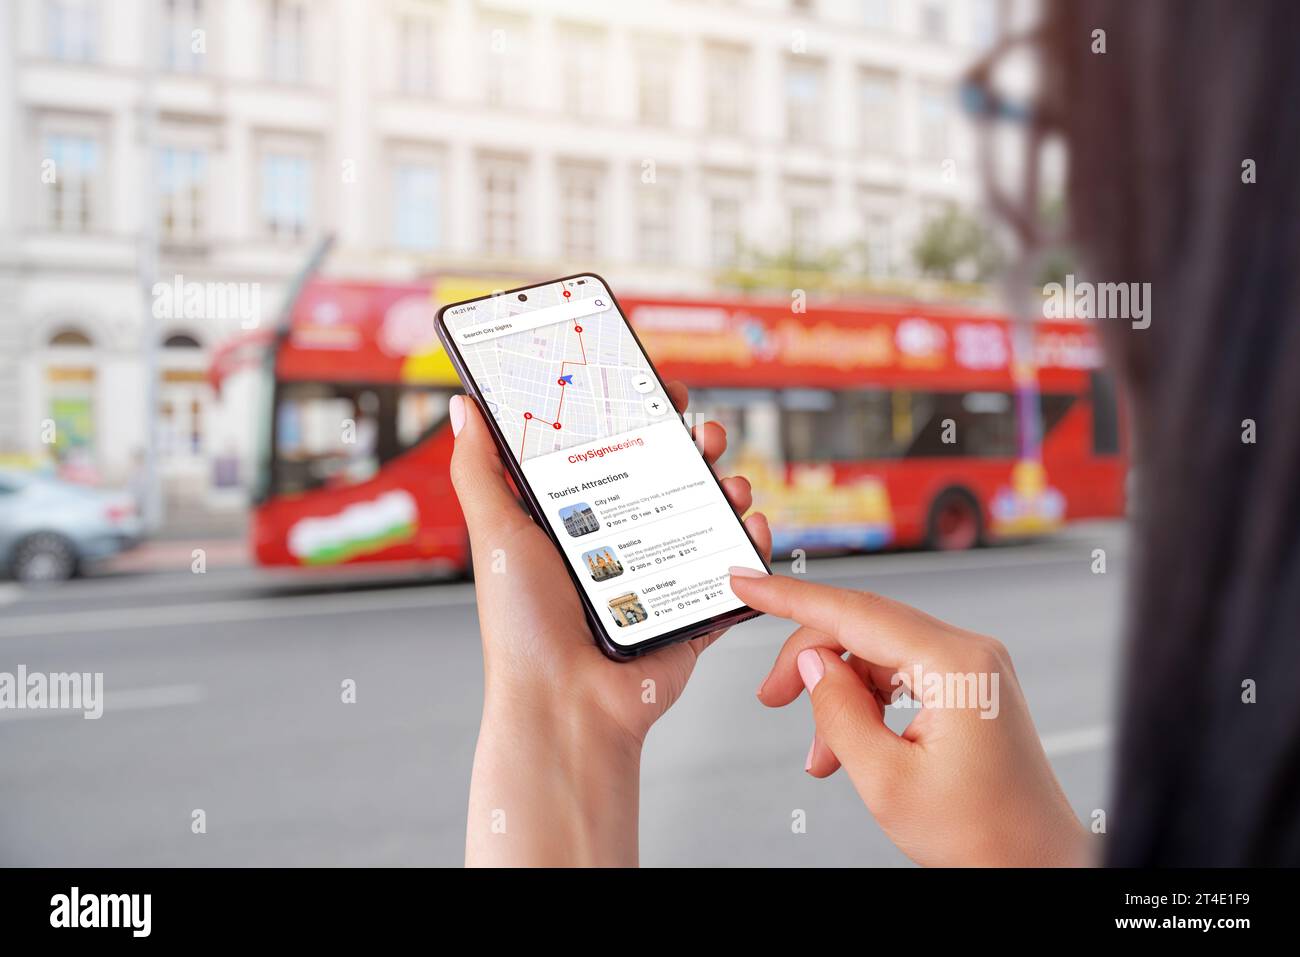 App City Sightseeing su smartphone in mani femminili. Autobus turistico cittadino sullo sfondo Foto Stock